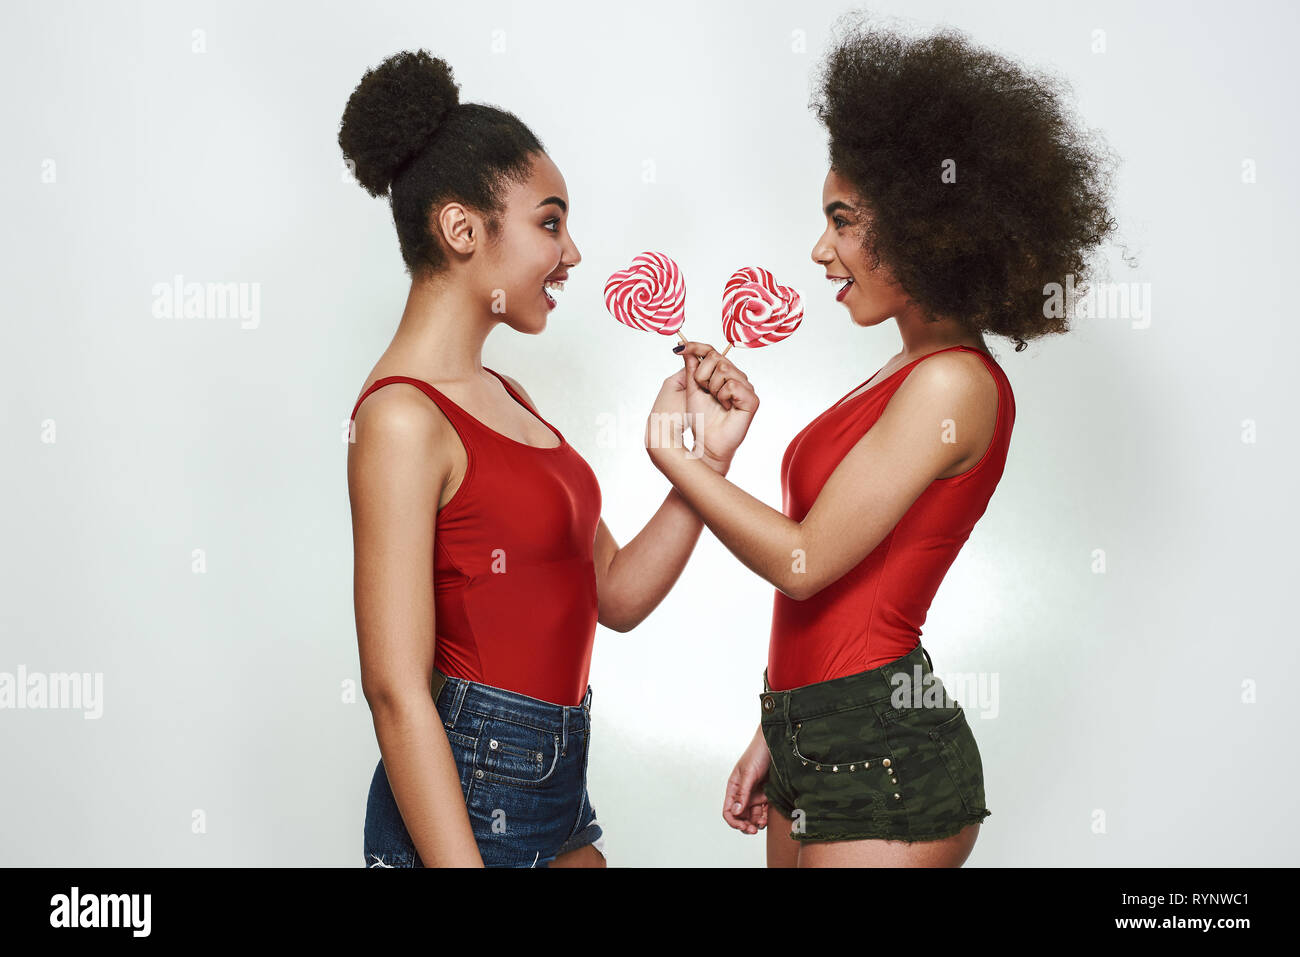 Versuche mein Lutscher! Zwei freundliche junge afro-amerikanische Frau im Sommer Kleider sind holding Lutscher und an einander, während gegen grauen Hintergrund stehen. Spaß-Konzept. Frauen Schönheit Stockfoto